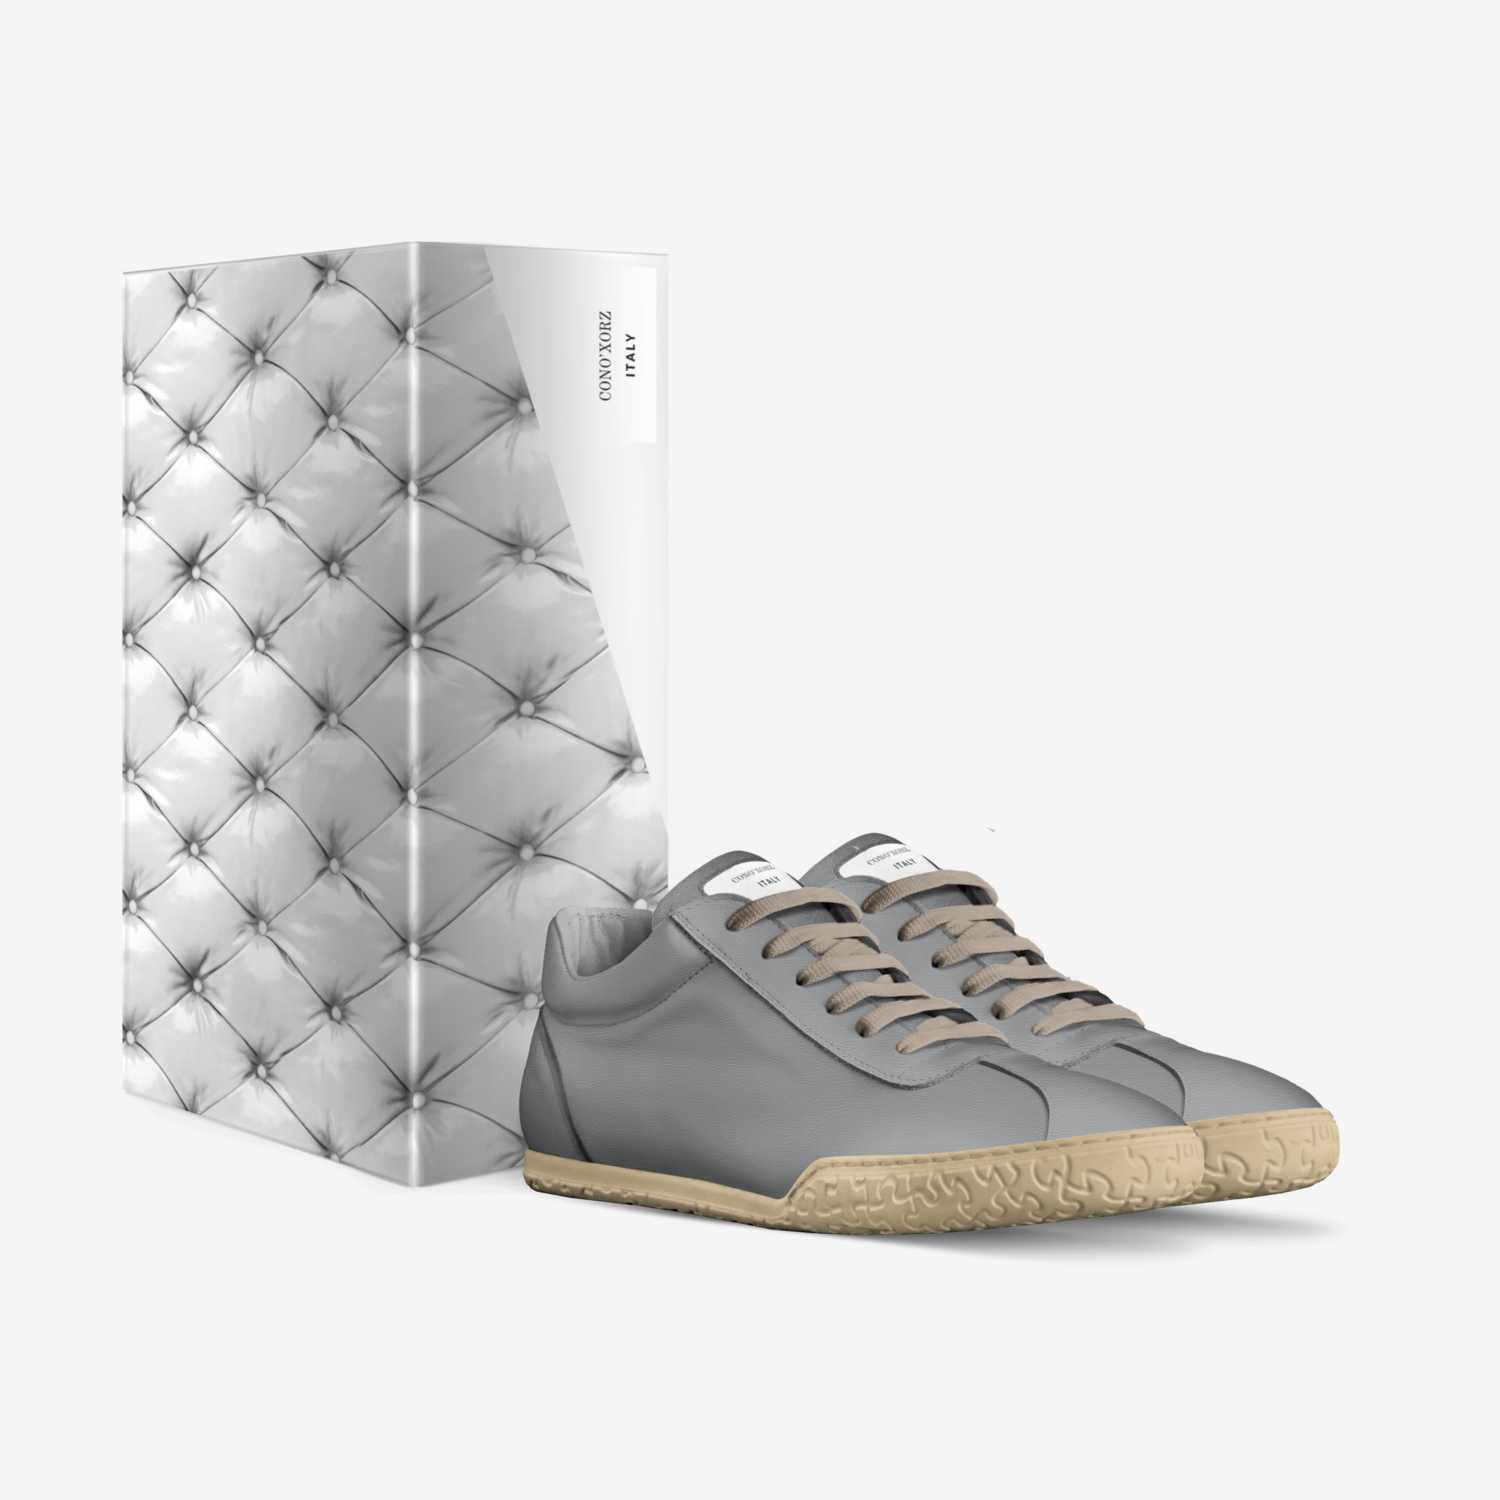 CONO'XORZ  custom made in Italy shoes by Jelani Dukes | Box view